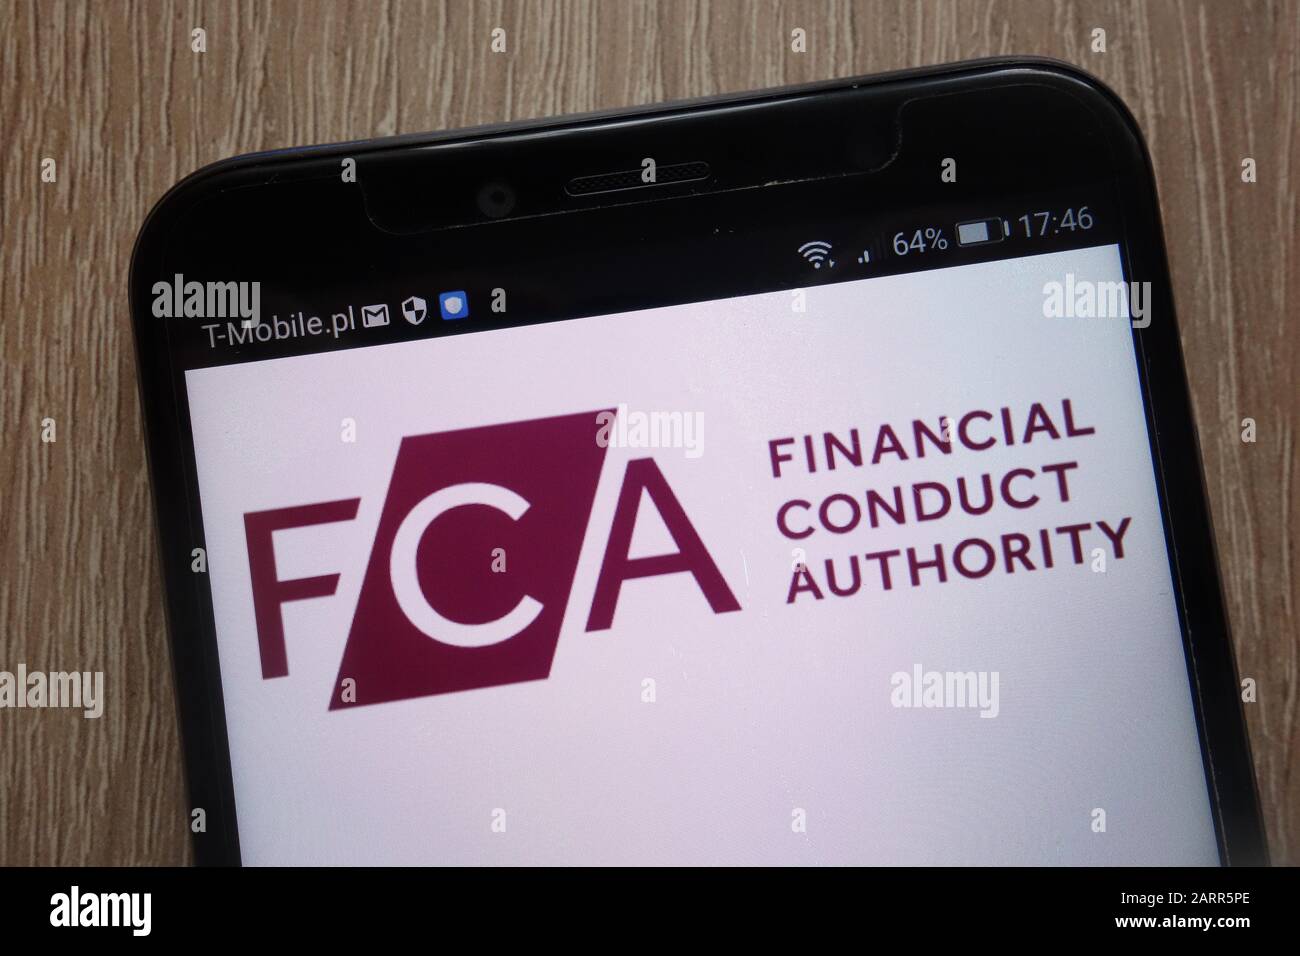 El logotipo de Financial Conduct Authority se muestra en un smartphone moderno Foto de stock